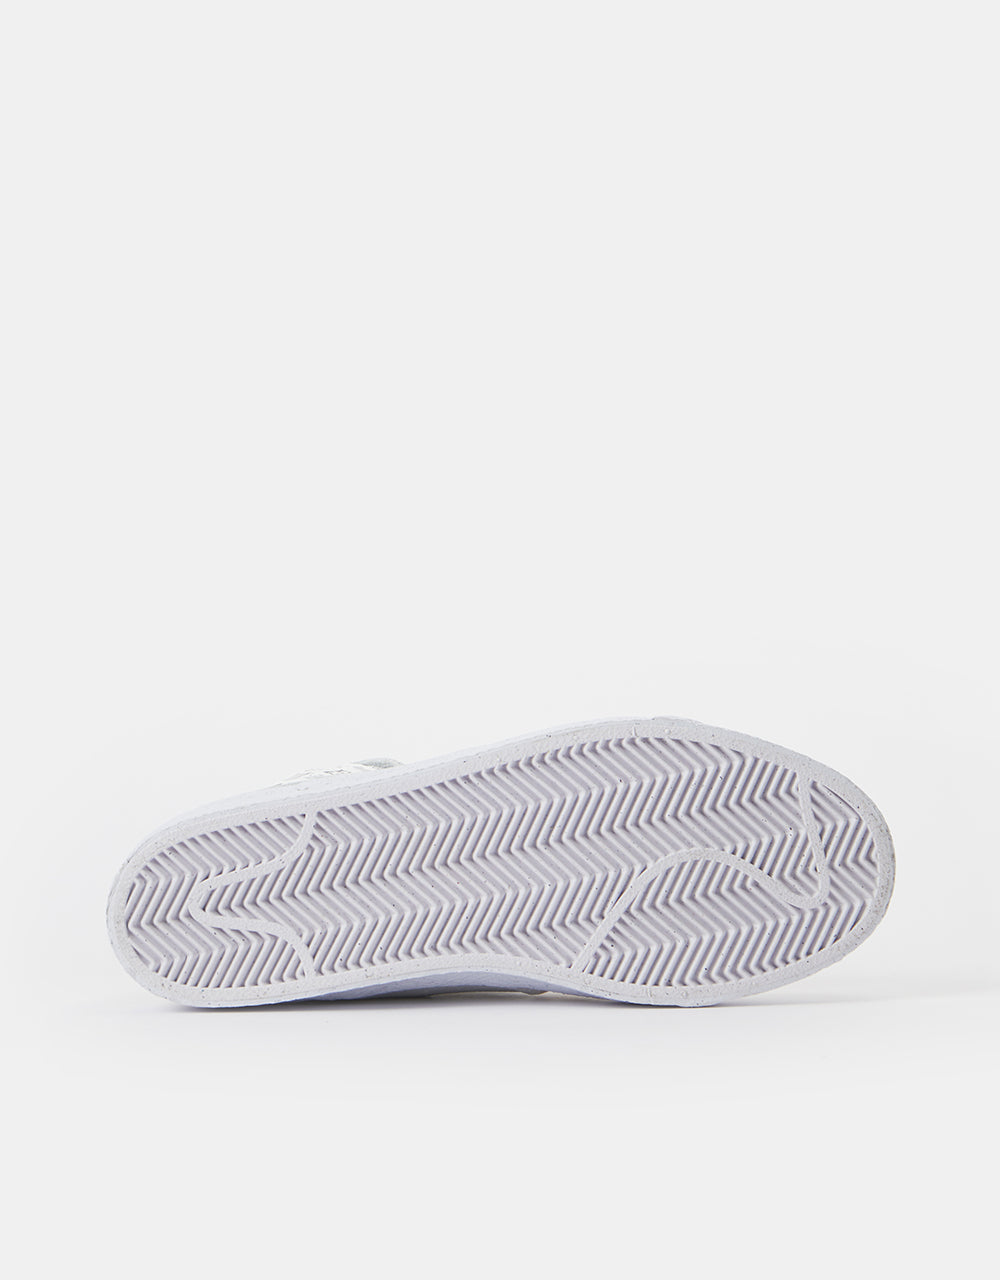 Nike SB Zoom Blazer Mid Premium Plus Skate Shoes - Summit White/Summit White